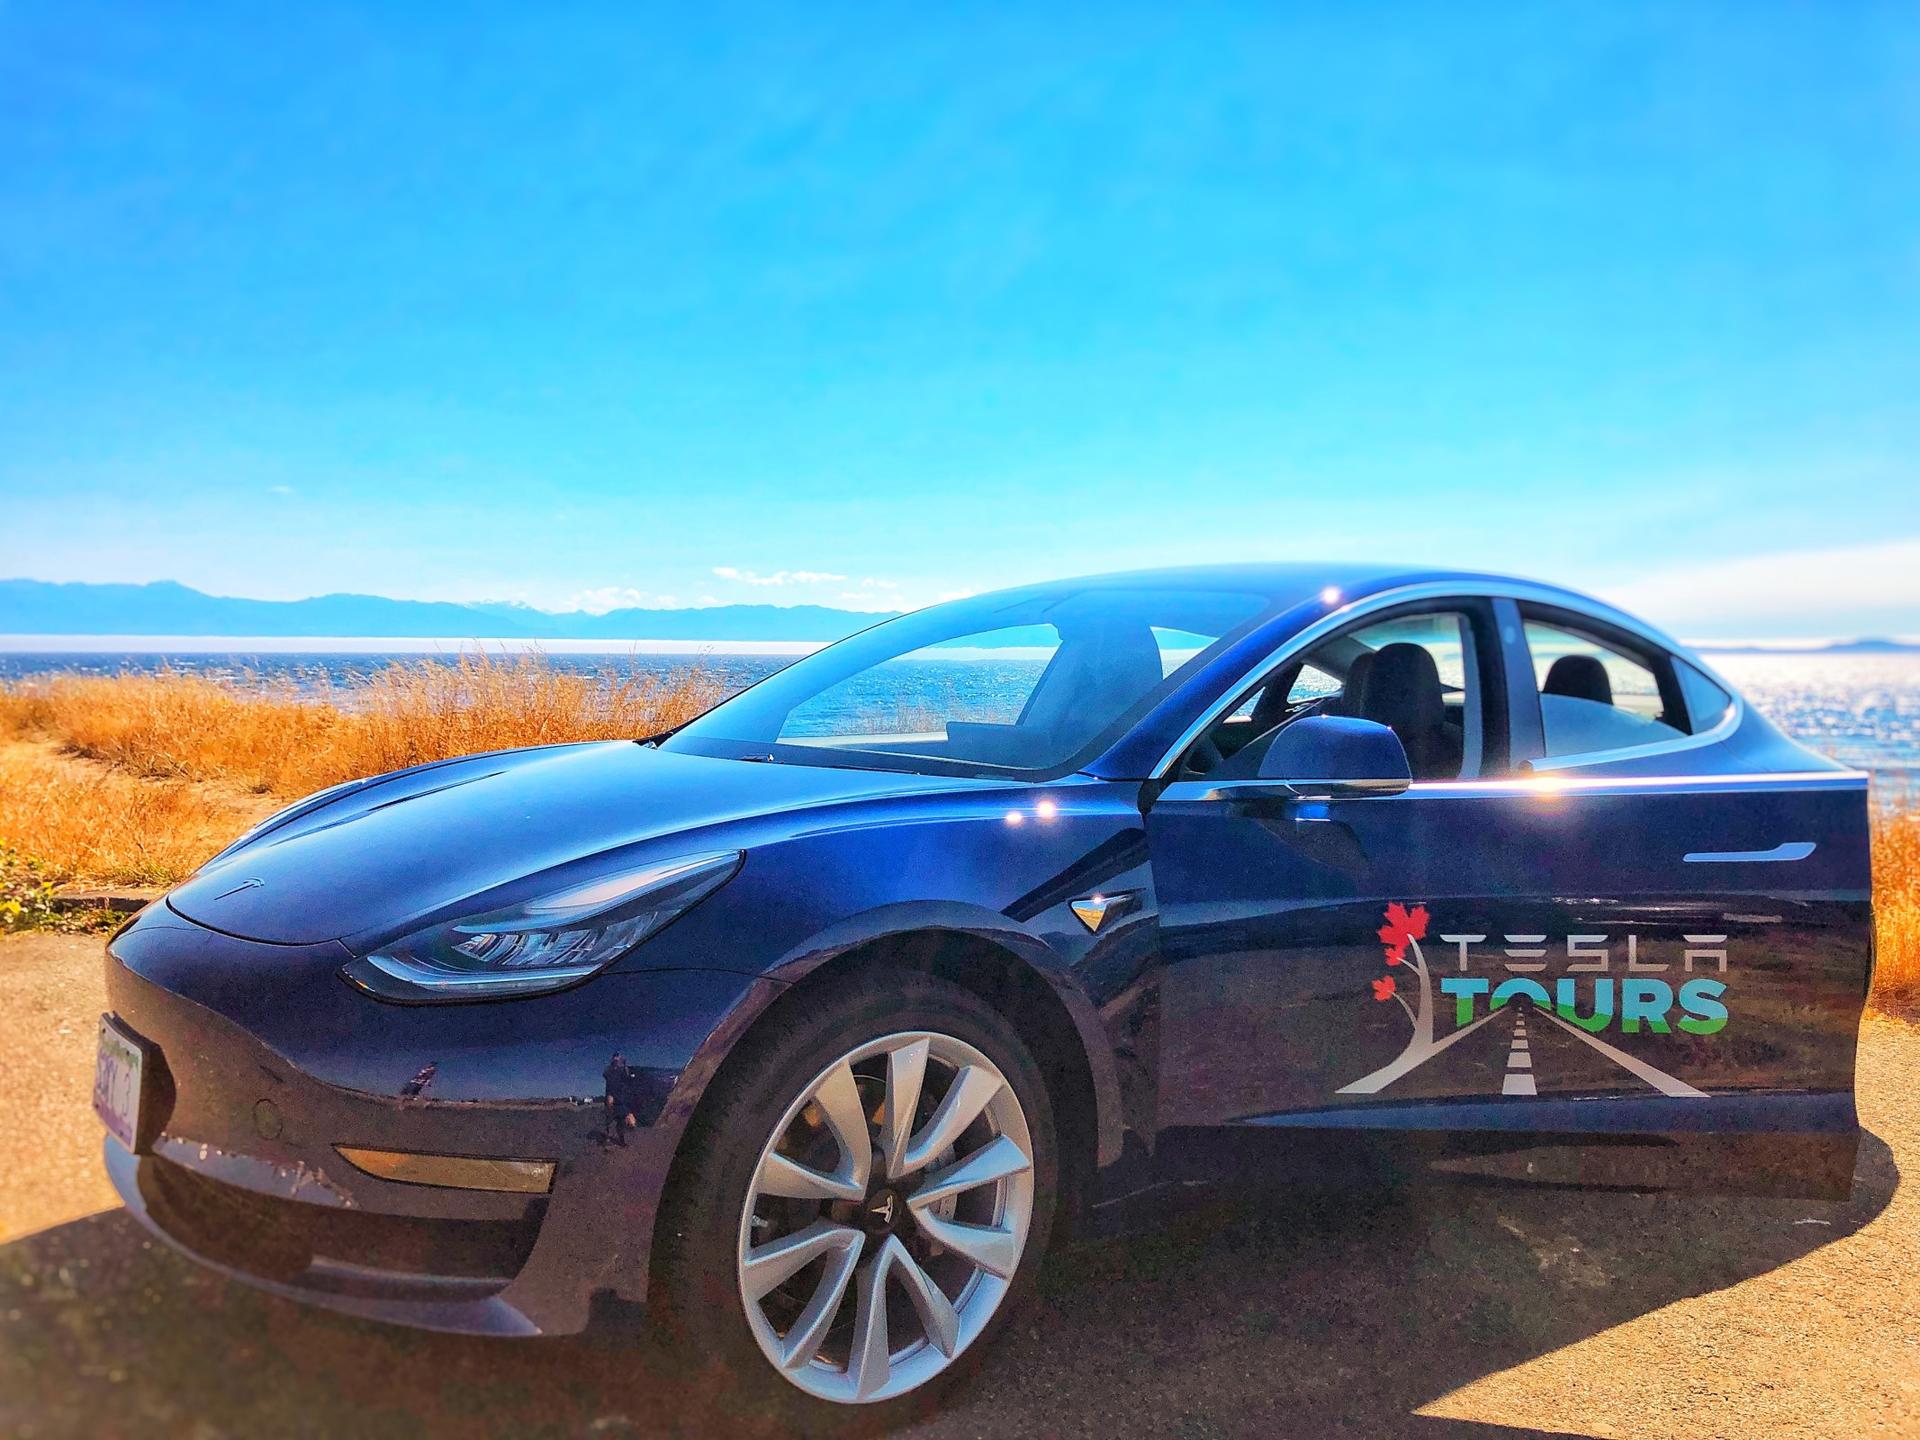 Tesla Tours Model 3 Now Touring!